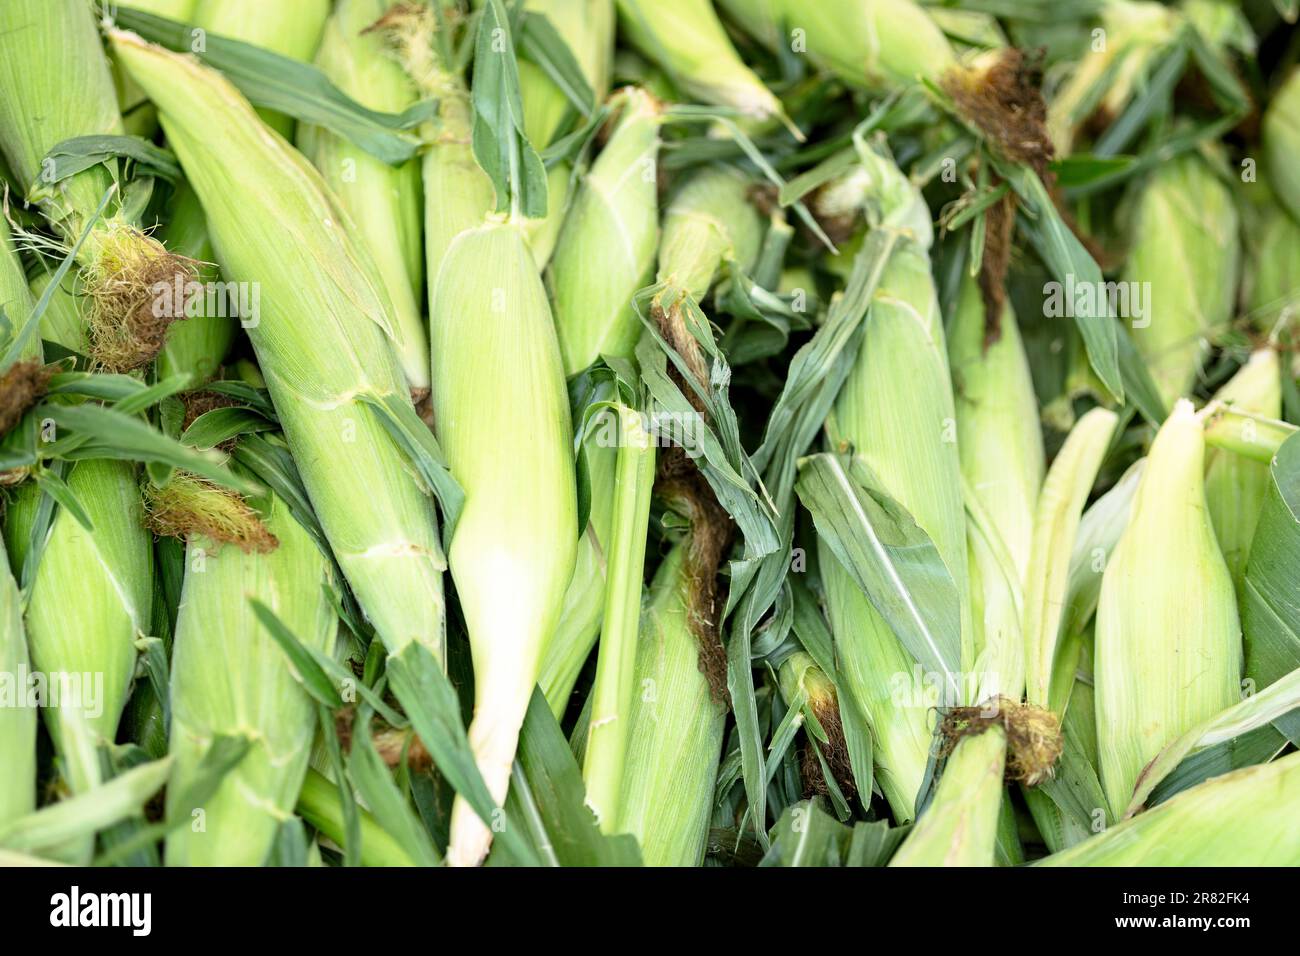 Raw Corn in Husk Stock Photo